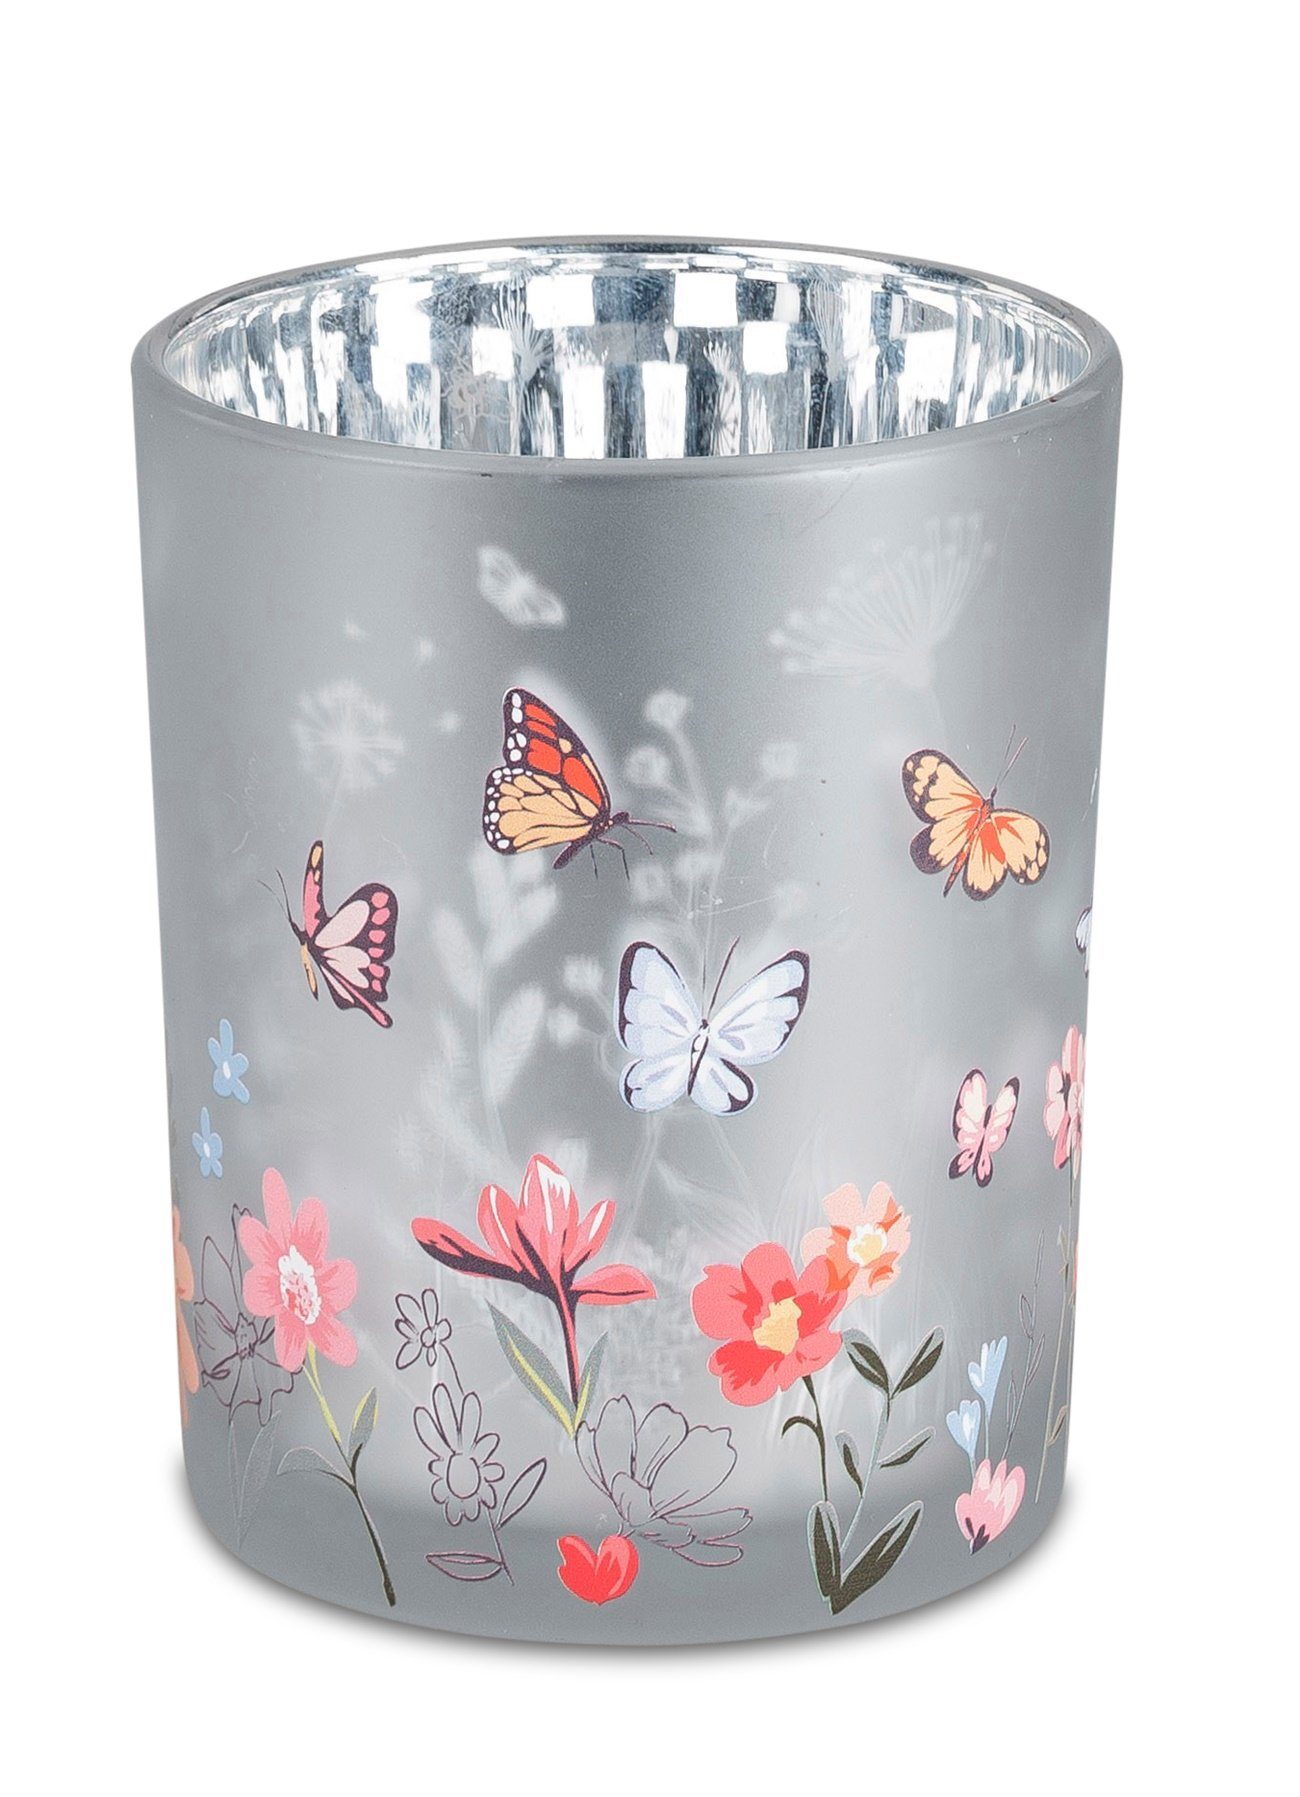 dekojohnson Windlicht dekojohnson schönes Windlicht-Glas modern dekorativer Teelichthalter | Windlichter